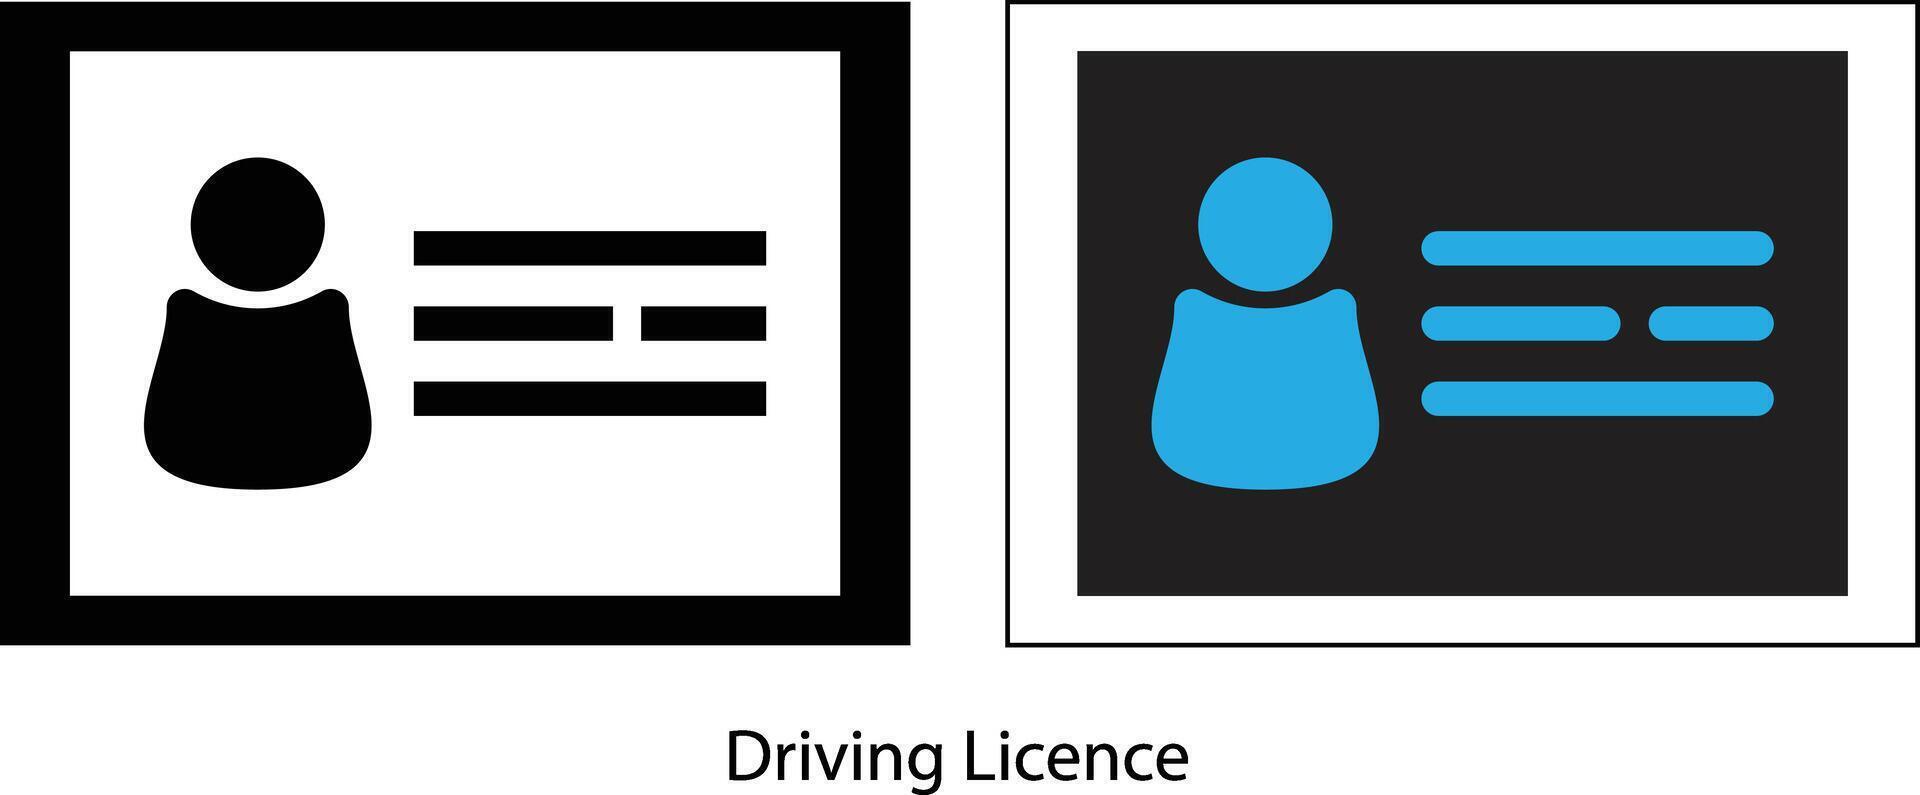 körning licens kort vektor